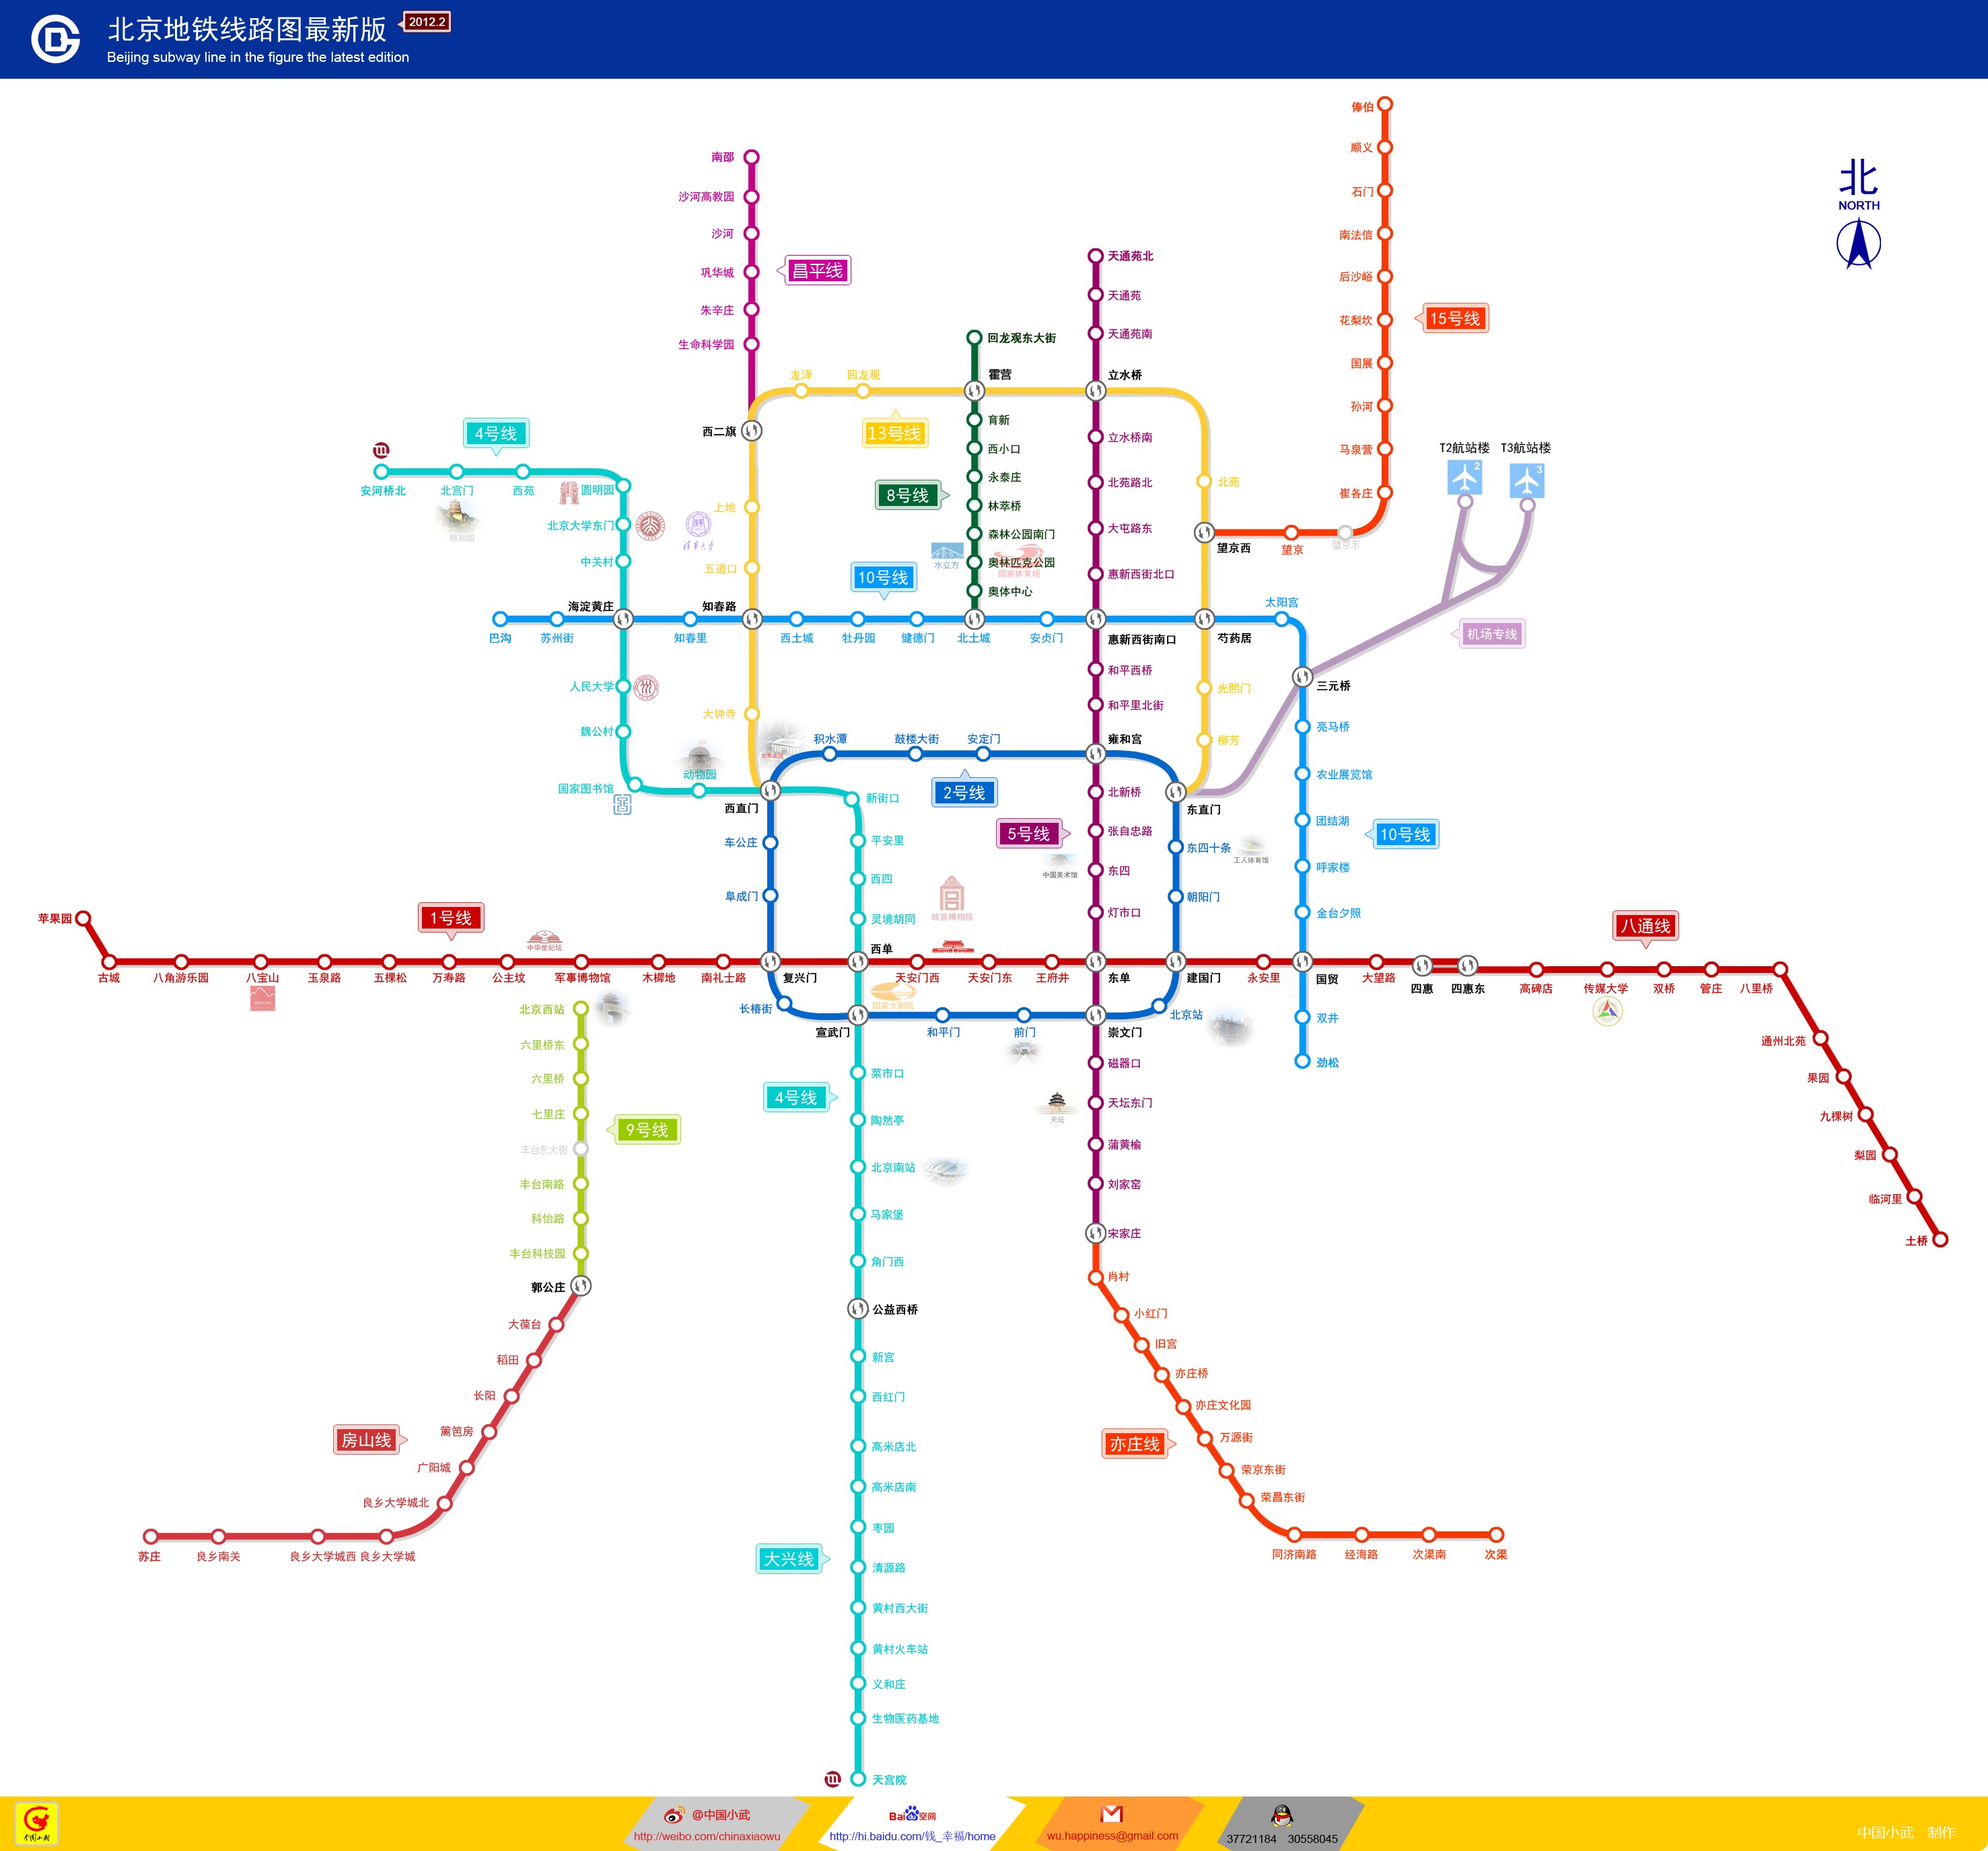 北京地铁线路图最新_北京地铁线路图高清晰2018_微信公众号文章